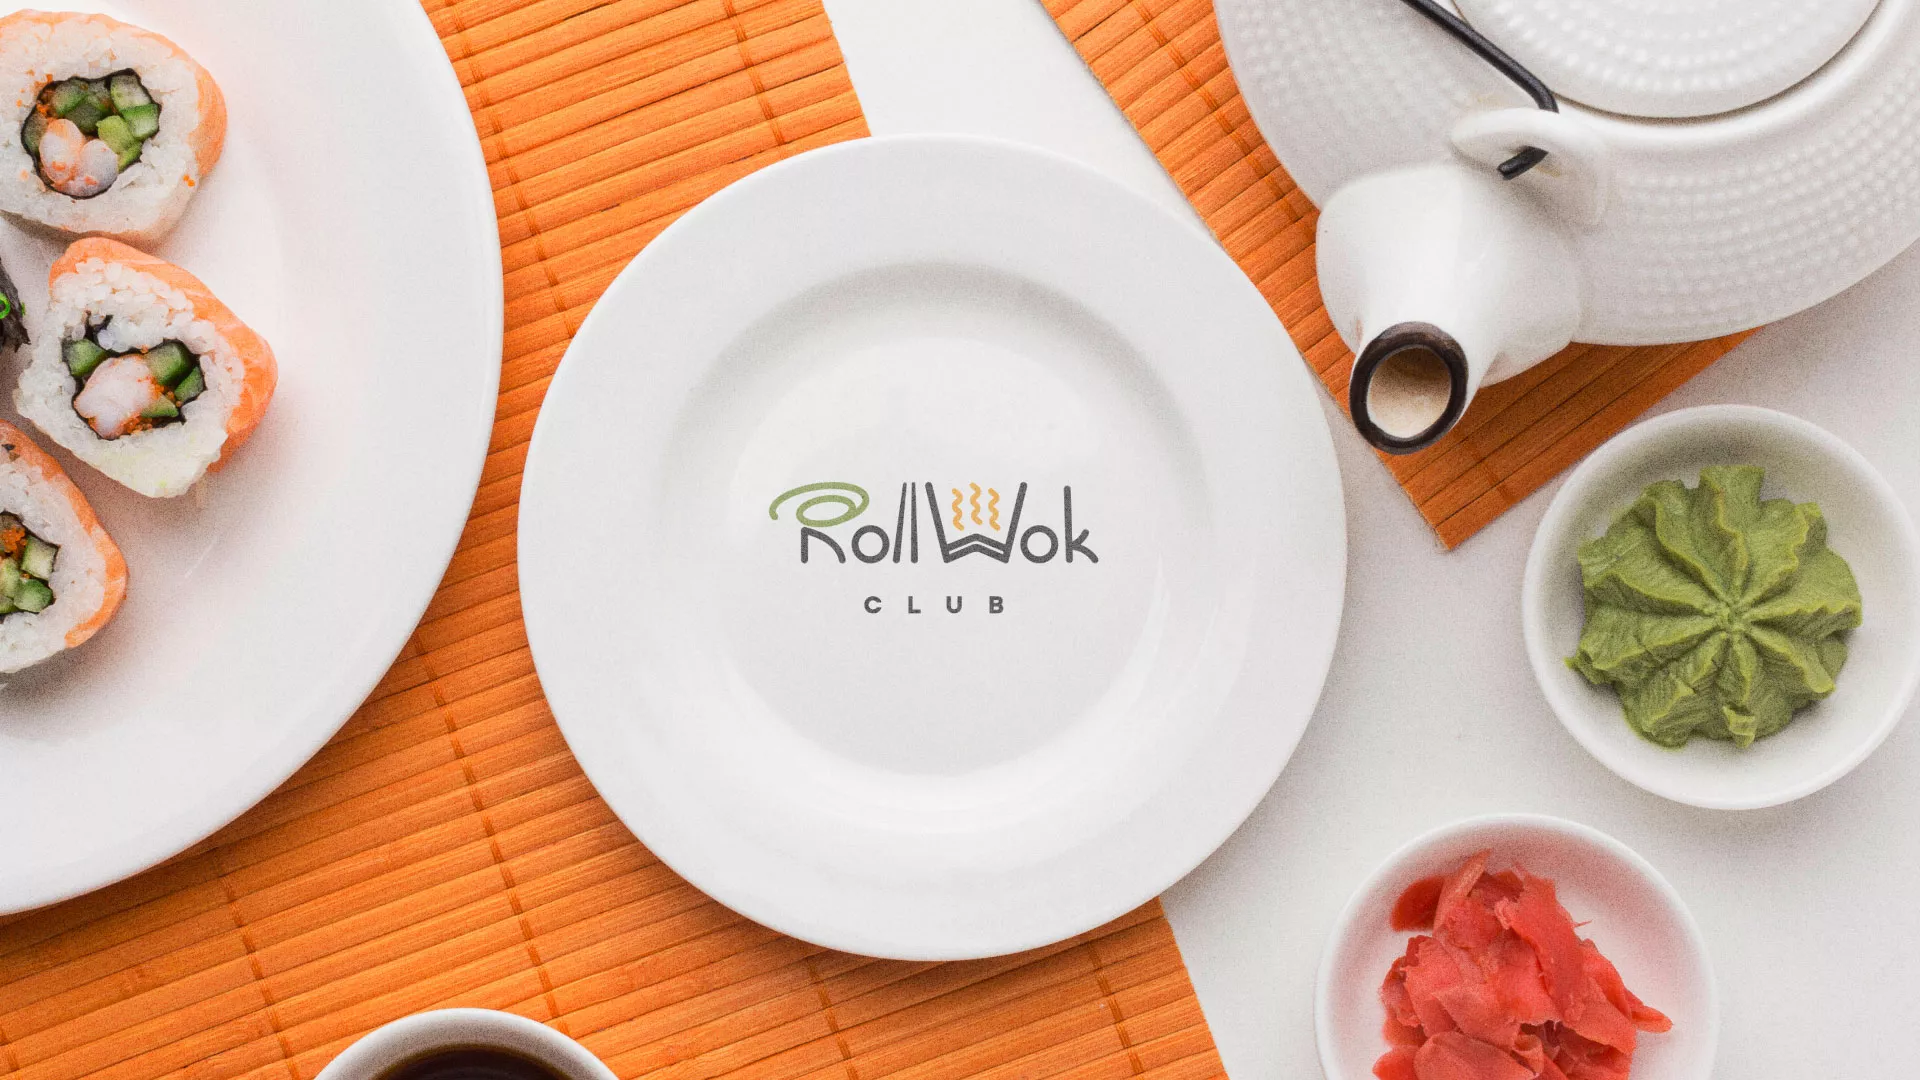 Разработка логотипа и фирменного стиля суши-бара «Roll Wok Club» в Перми